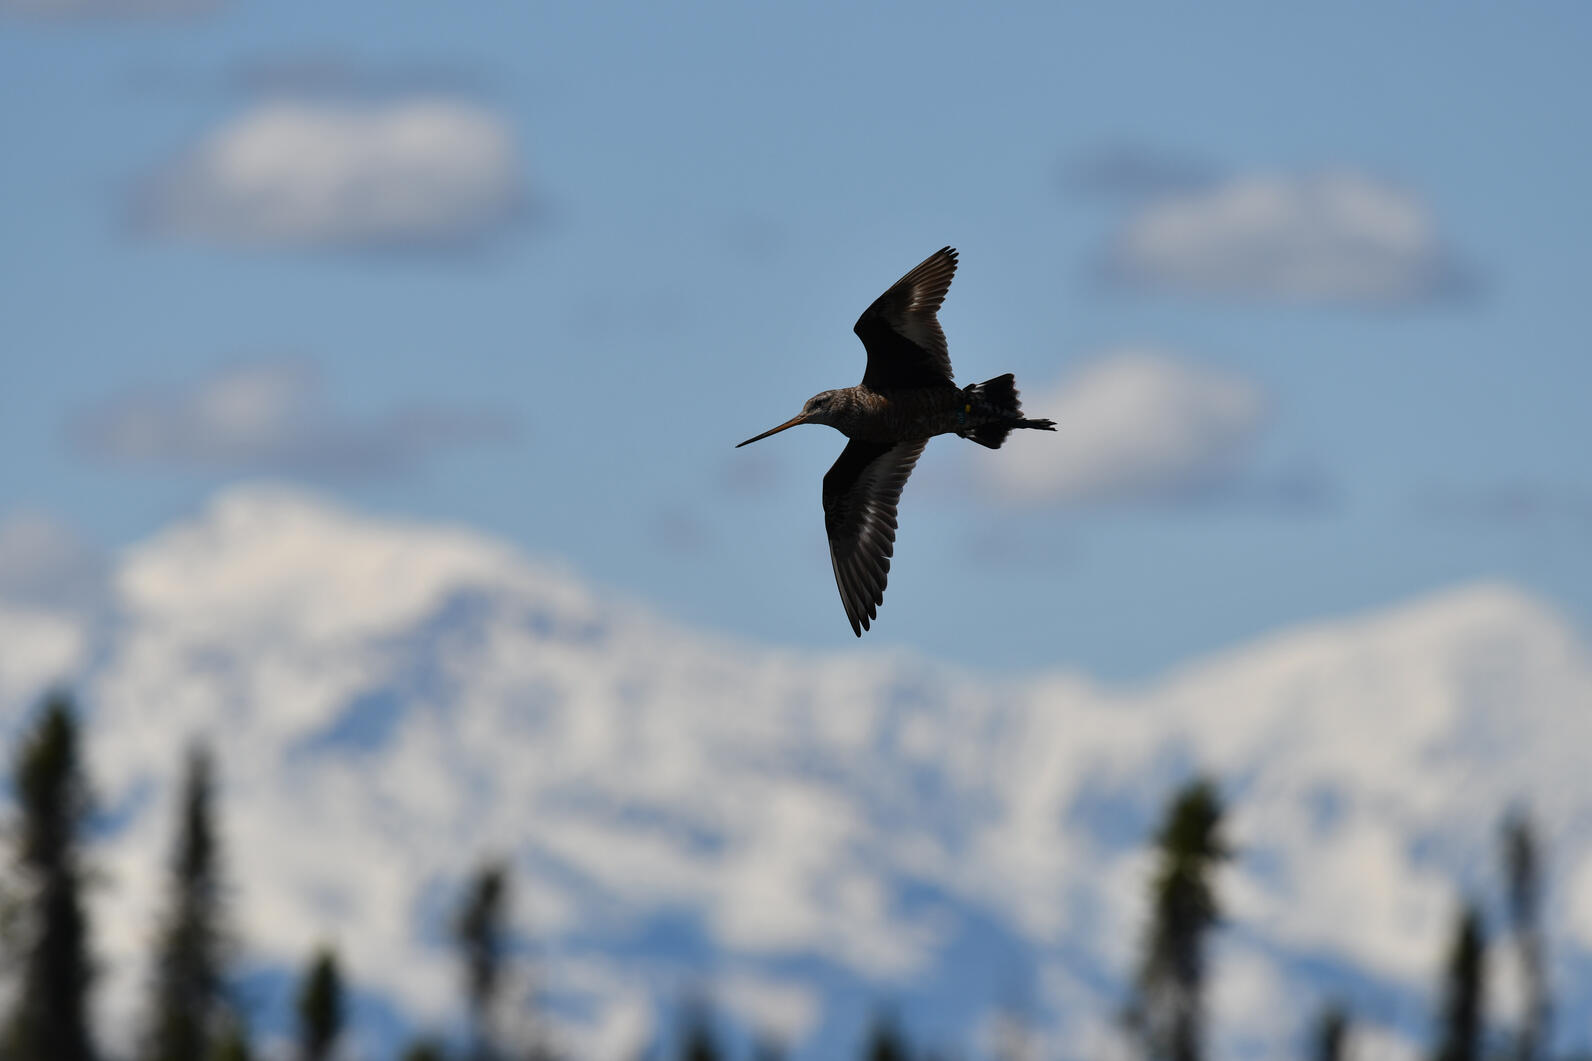 Shorebird in flight against blue sky